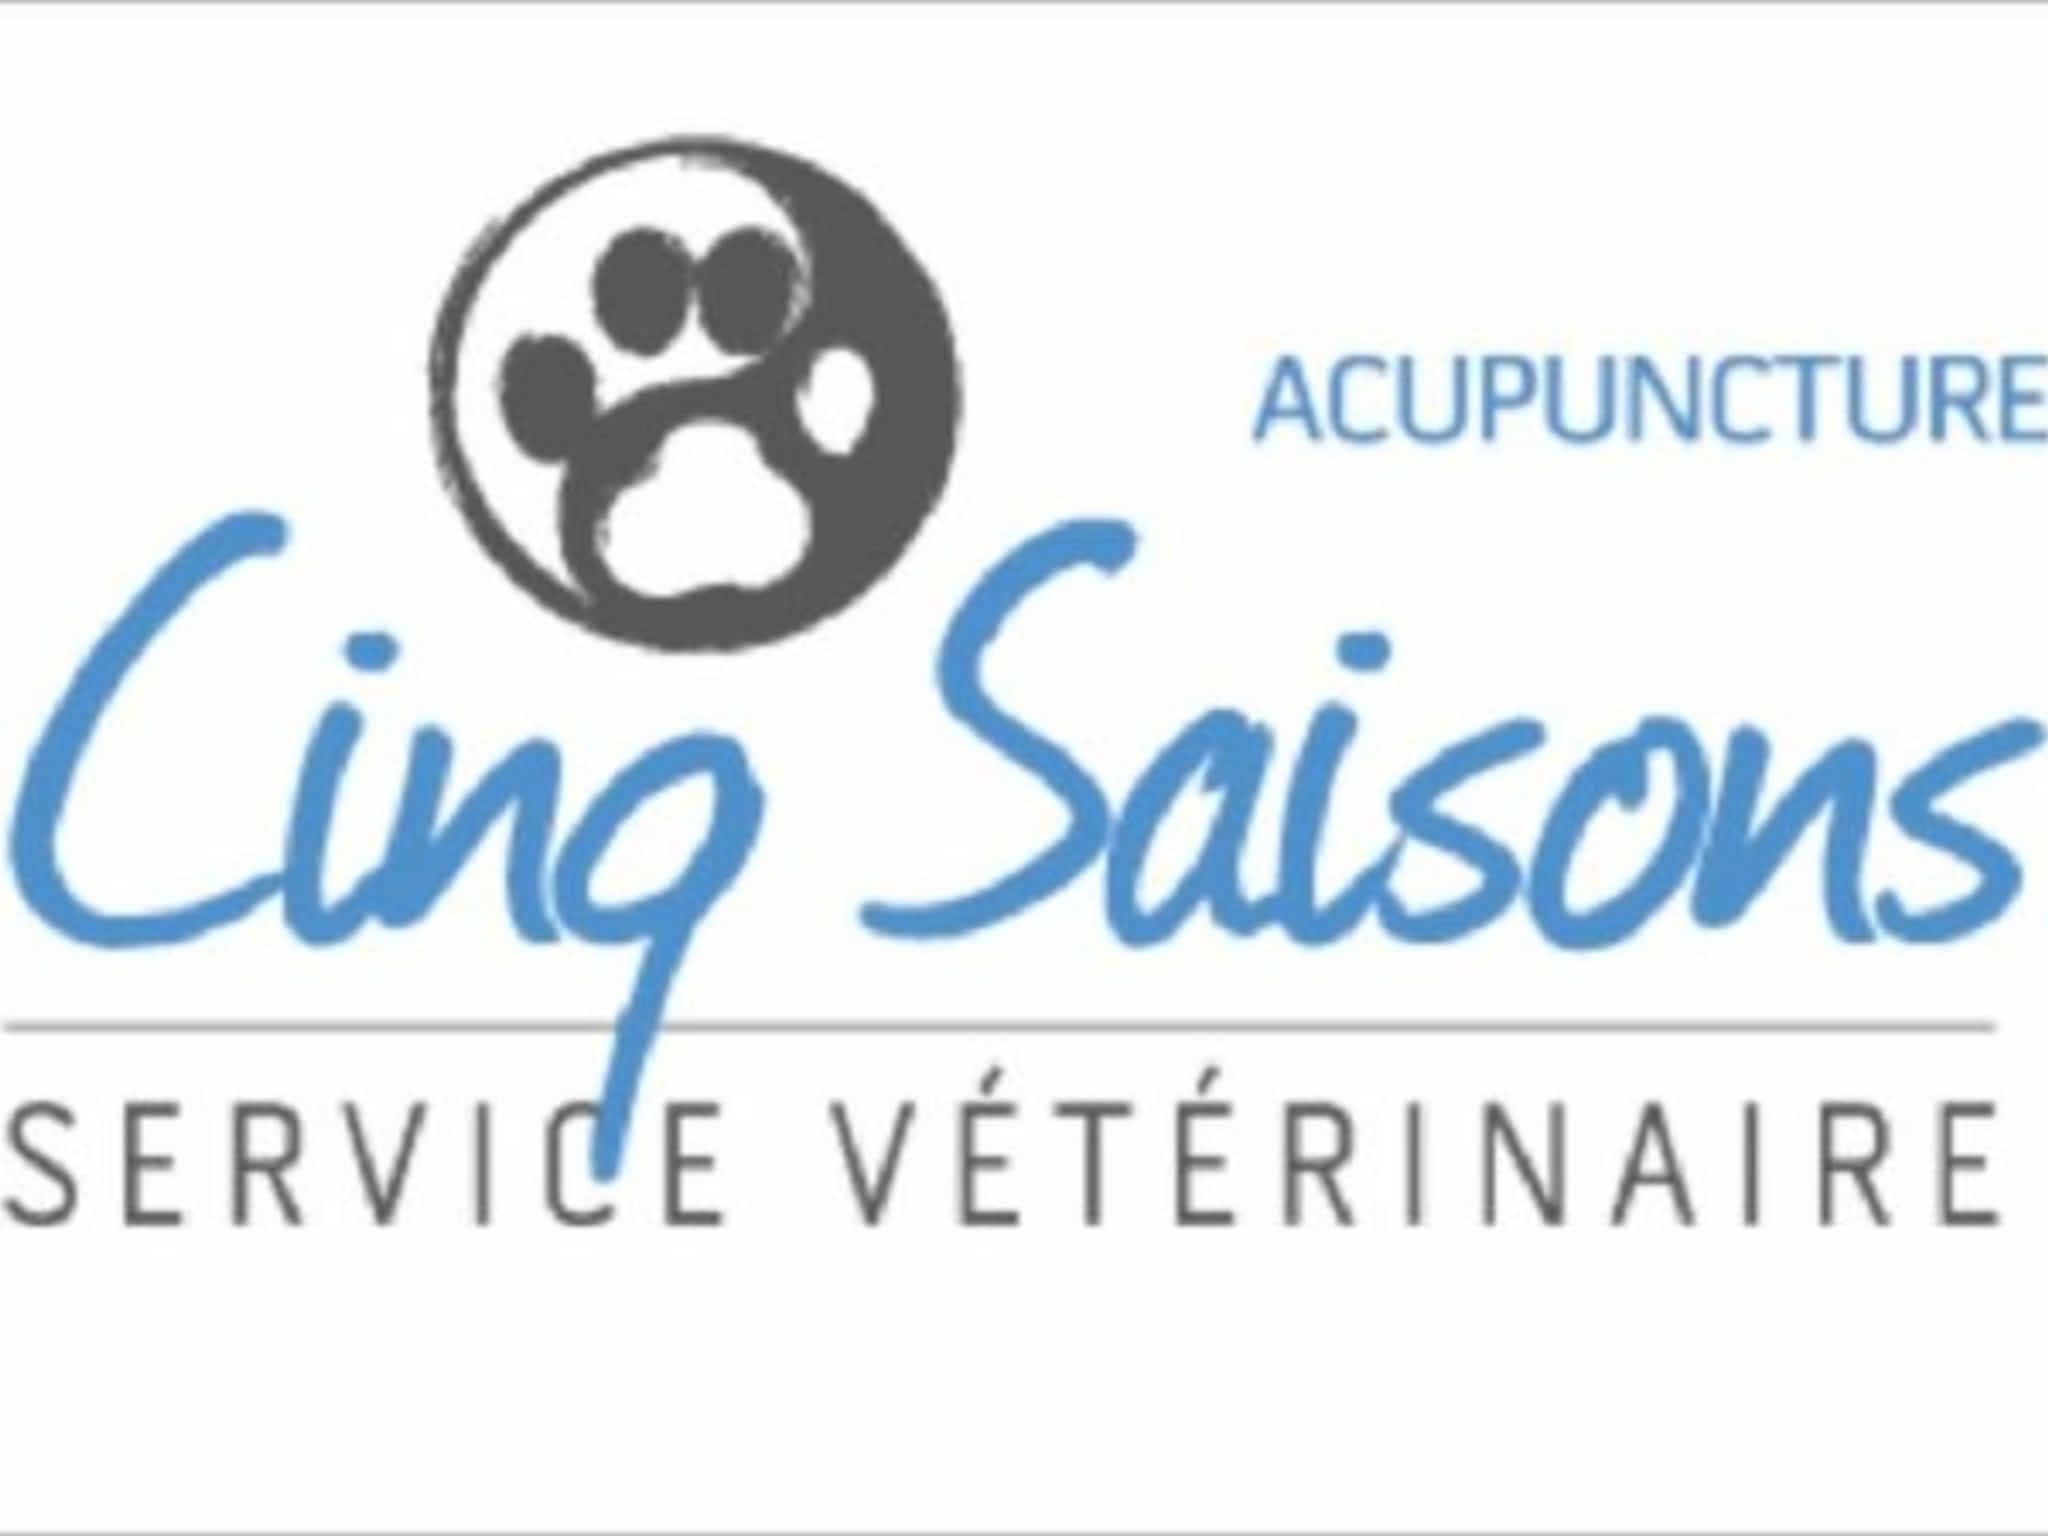 photo Service Vétérinaire Mobile Cinq Saisons (Acupuncture et Ostéophathie)